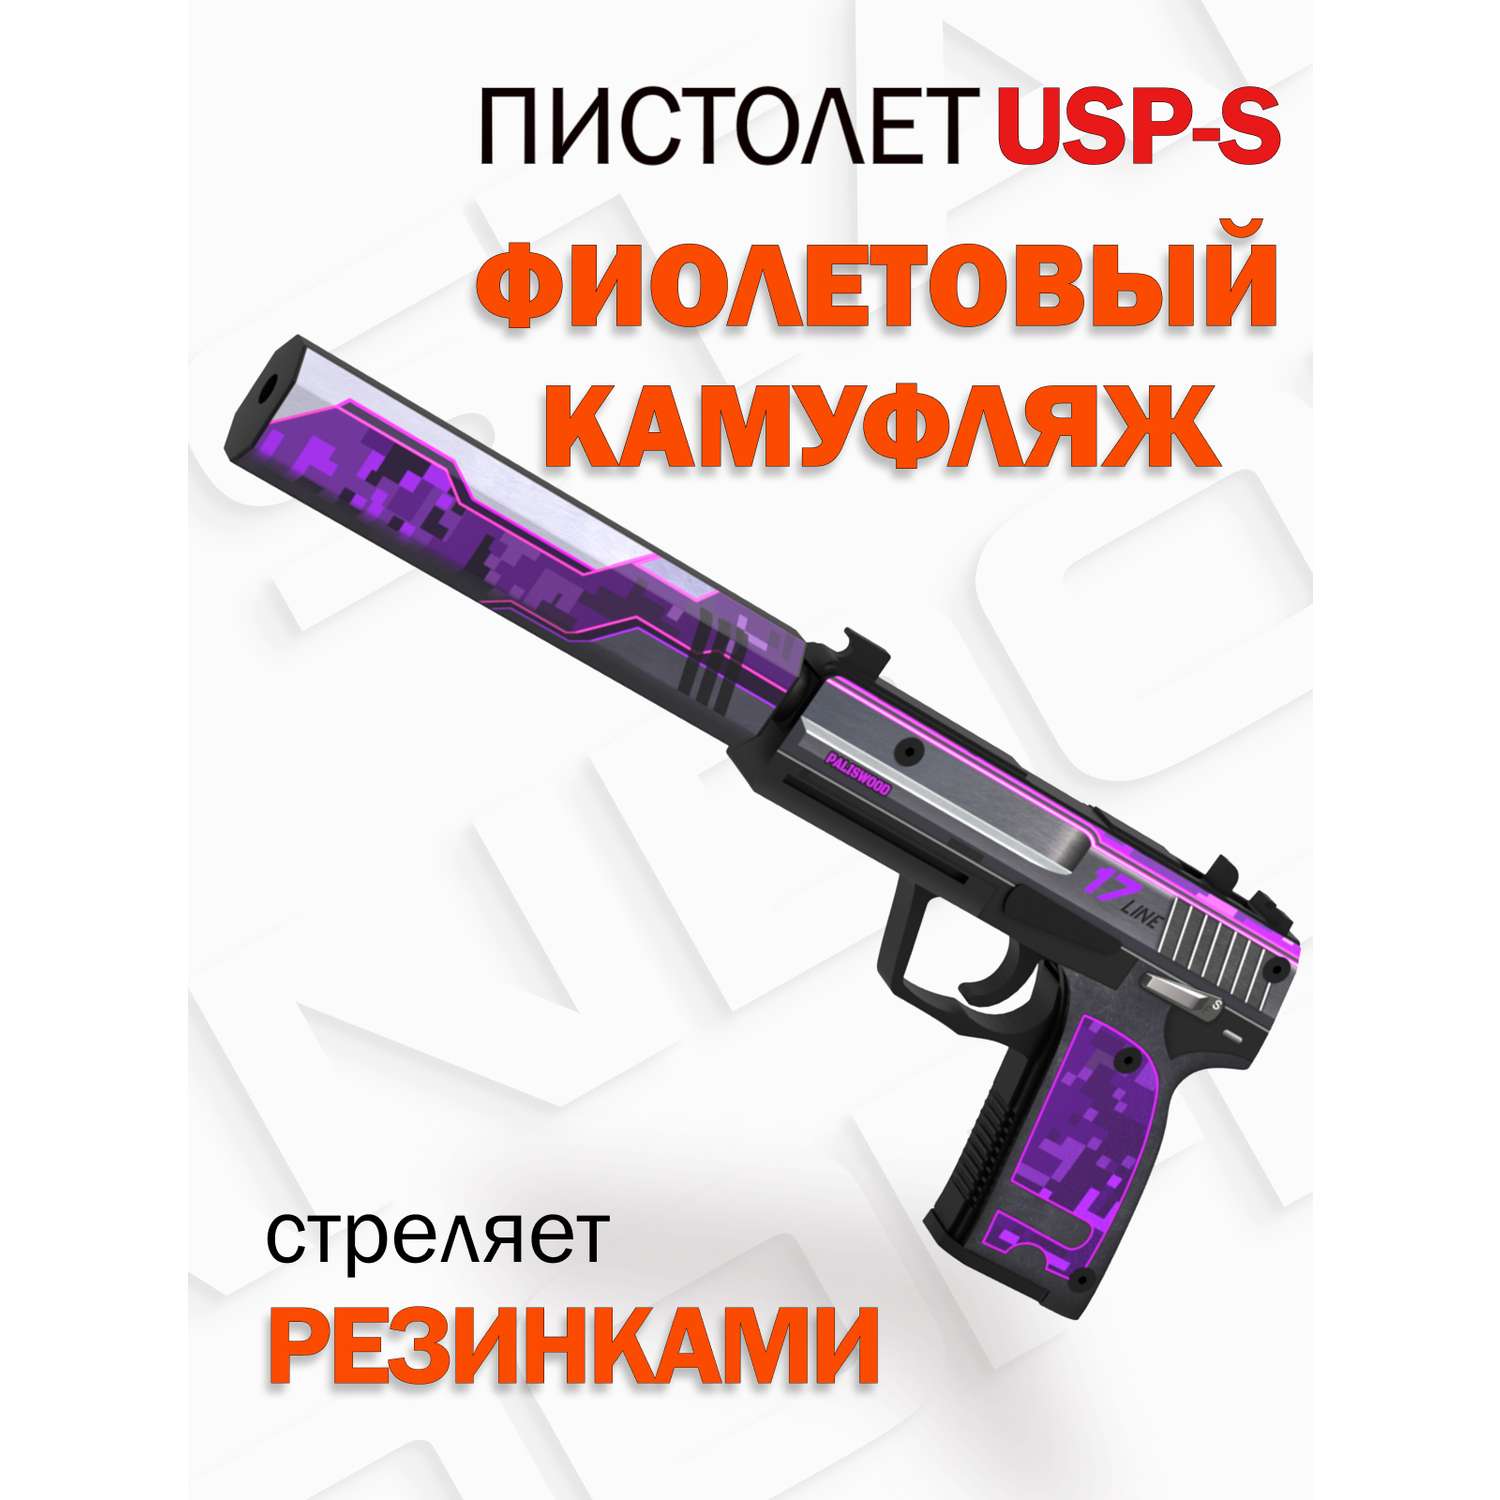 Пистолет USP PalisWood деревянный юсп фиолетовый камуфляж ворд оф стандоф - фото 1